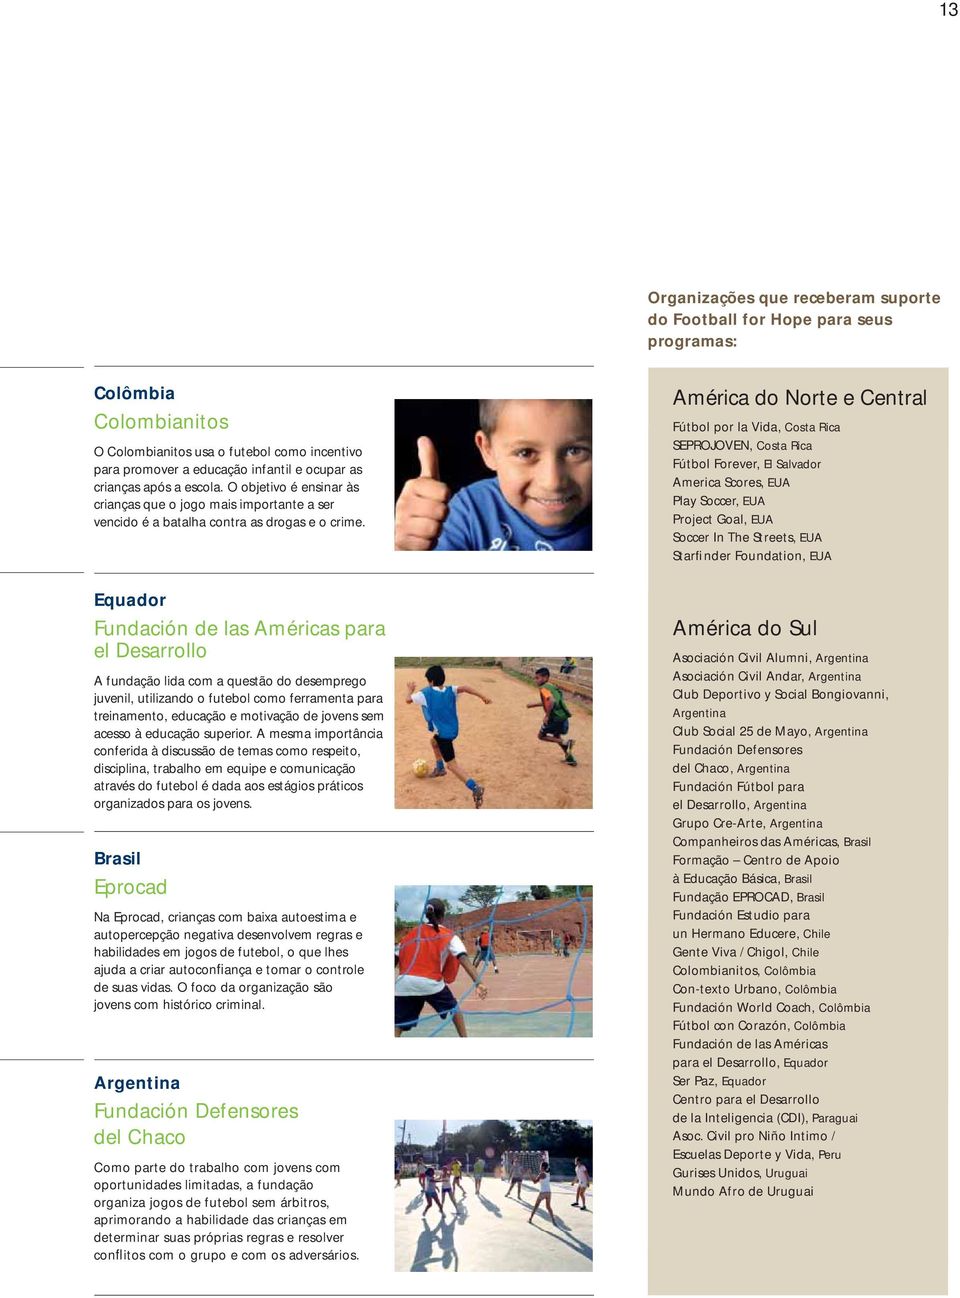 Equador Fundación de las Américas para el Desarrollo A fundação lida com a questão do desemprego juvenil, utilizando o futebol como ferramenta para treinamento, educação e motivação de jovens sem